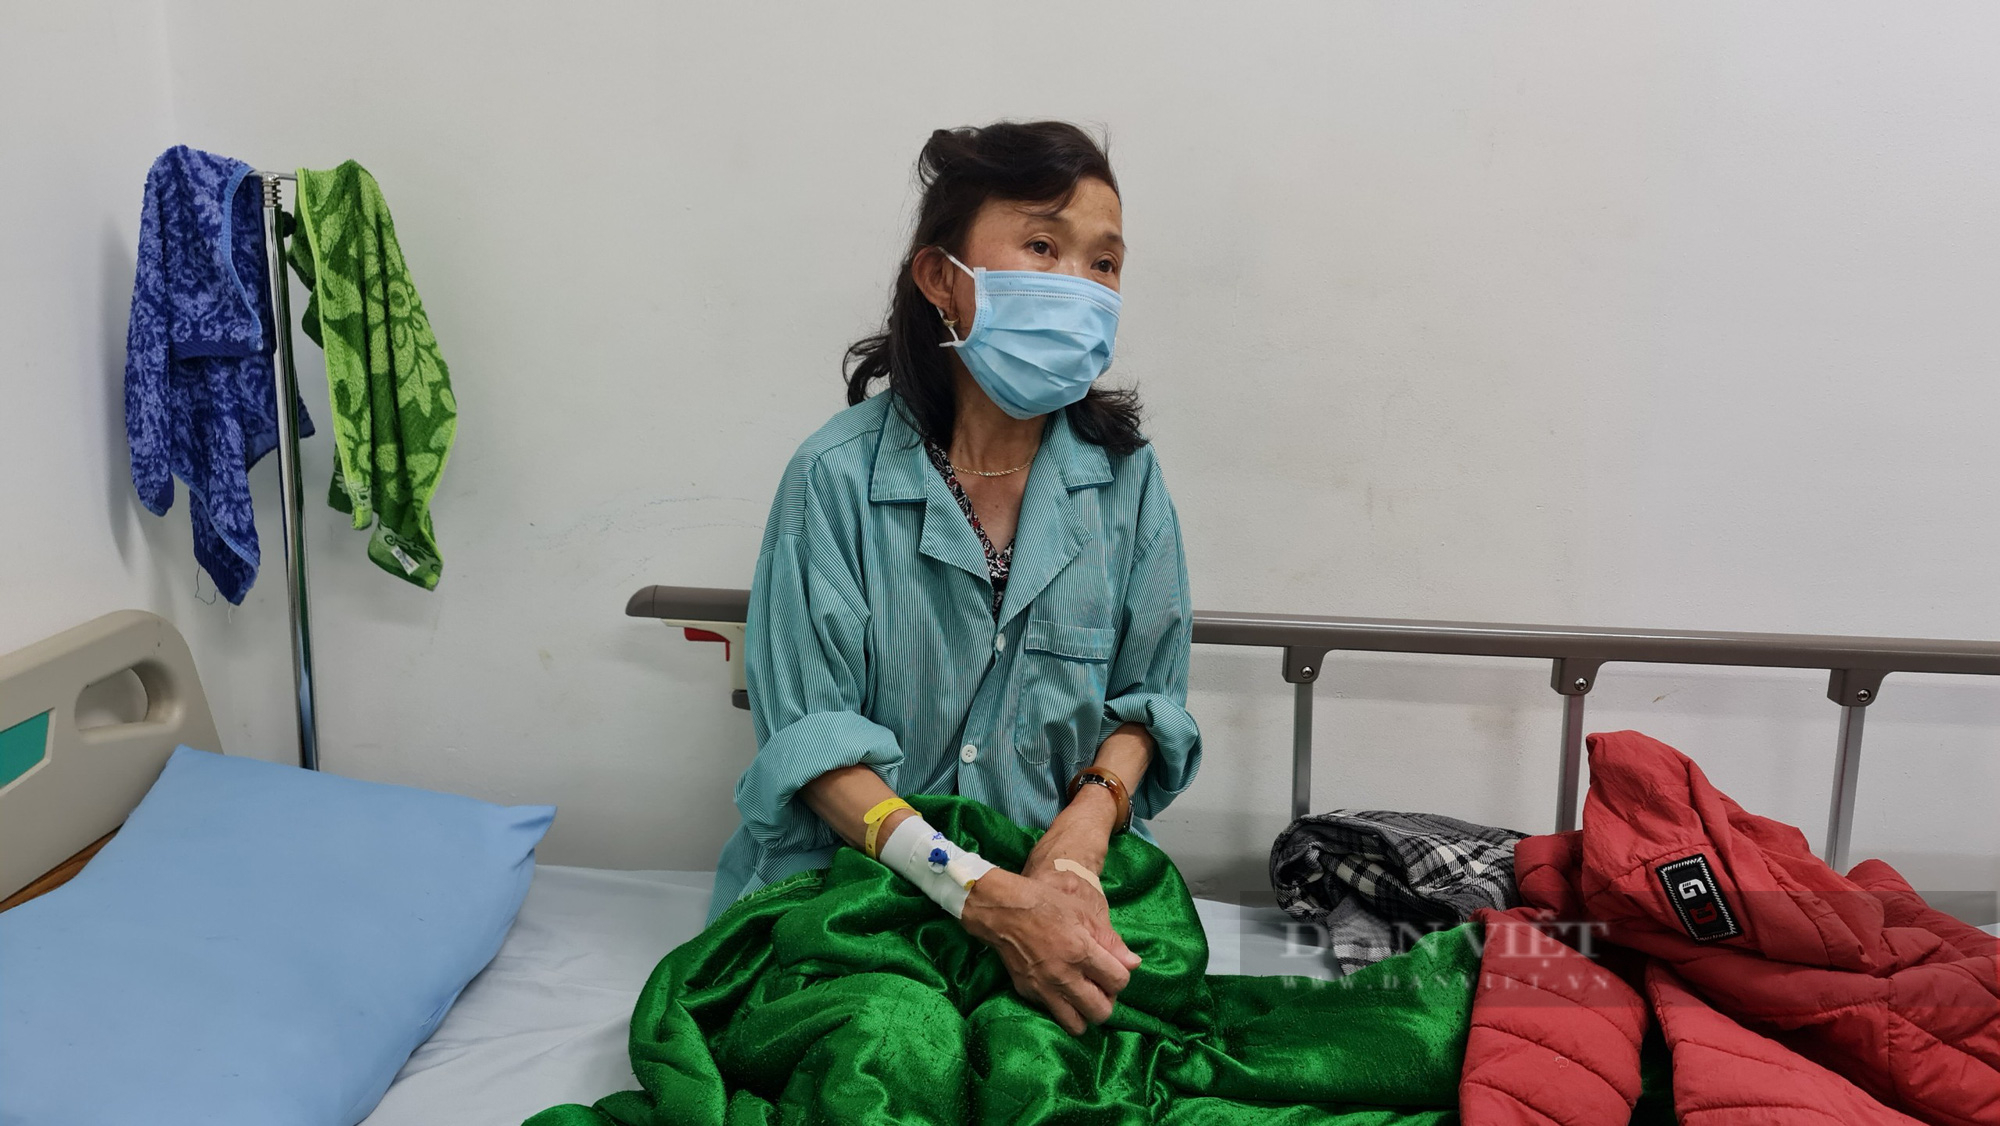 Lâm Đồng: Gần 50 người nhập viện sau khi ăn bánh mì Liên Hoa - Ảnh 4.